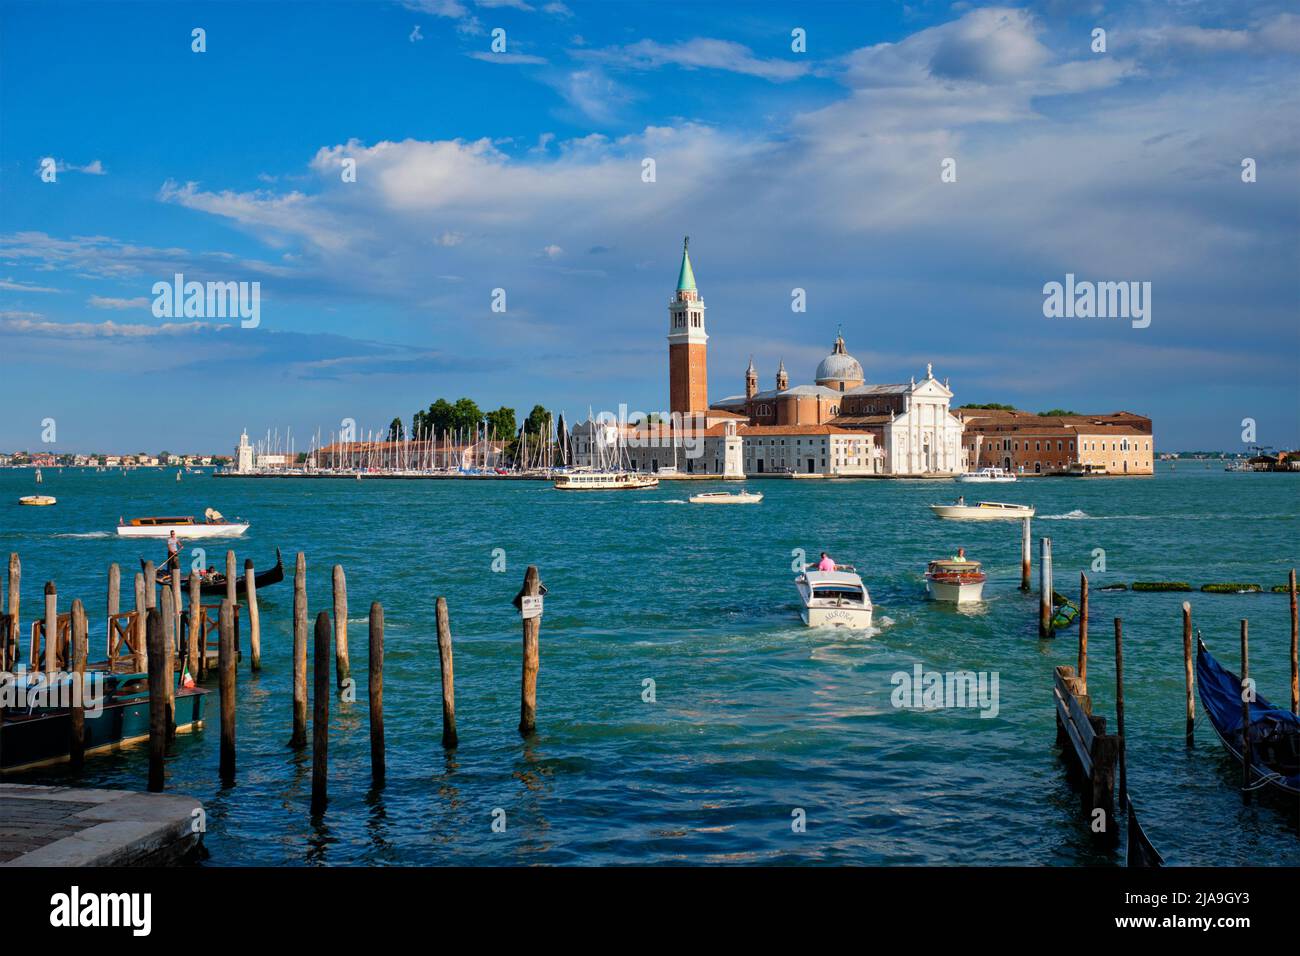 VENEZIA, ITALIA - 27 GIUGNO 2018: Taxi boat nella laguna di Venezia in Piazza San Marco con la chiesa di San Giorgio di maggiore sullo sfondo i Foto Stock